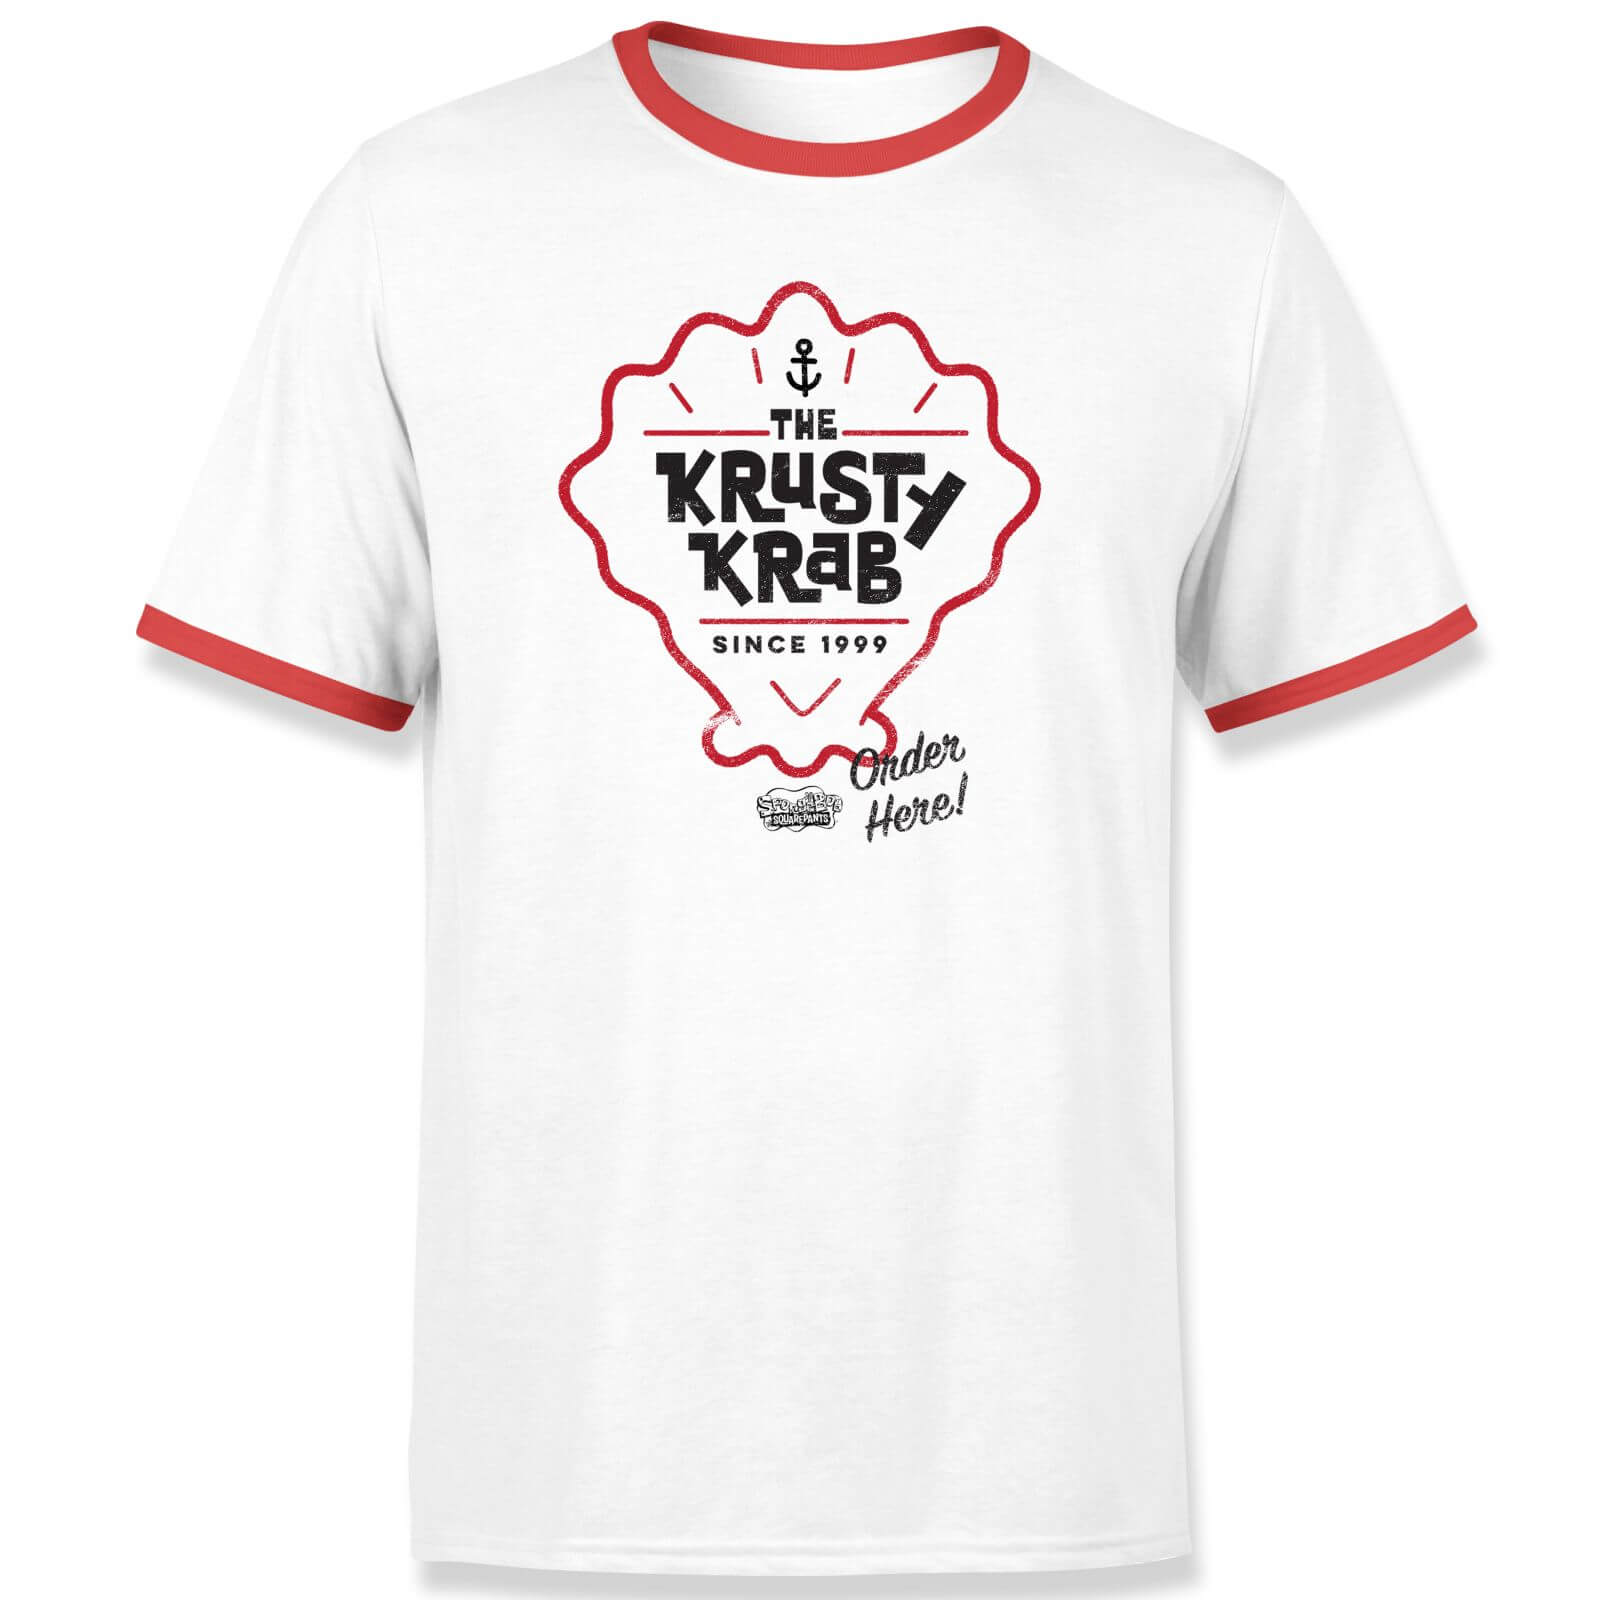 Spongebob Krusty Krab Unisex Ringer T-Shirt - White / Red - XXL - White